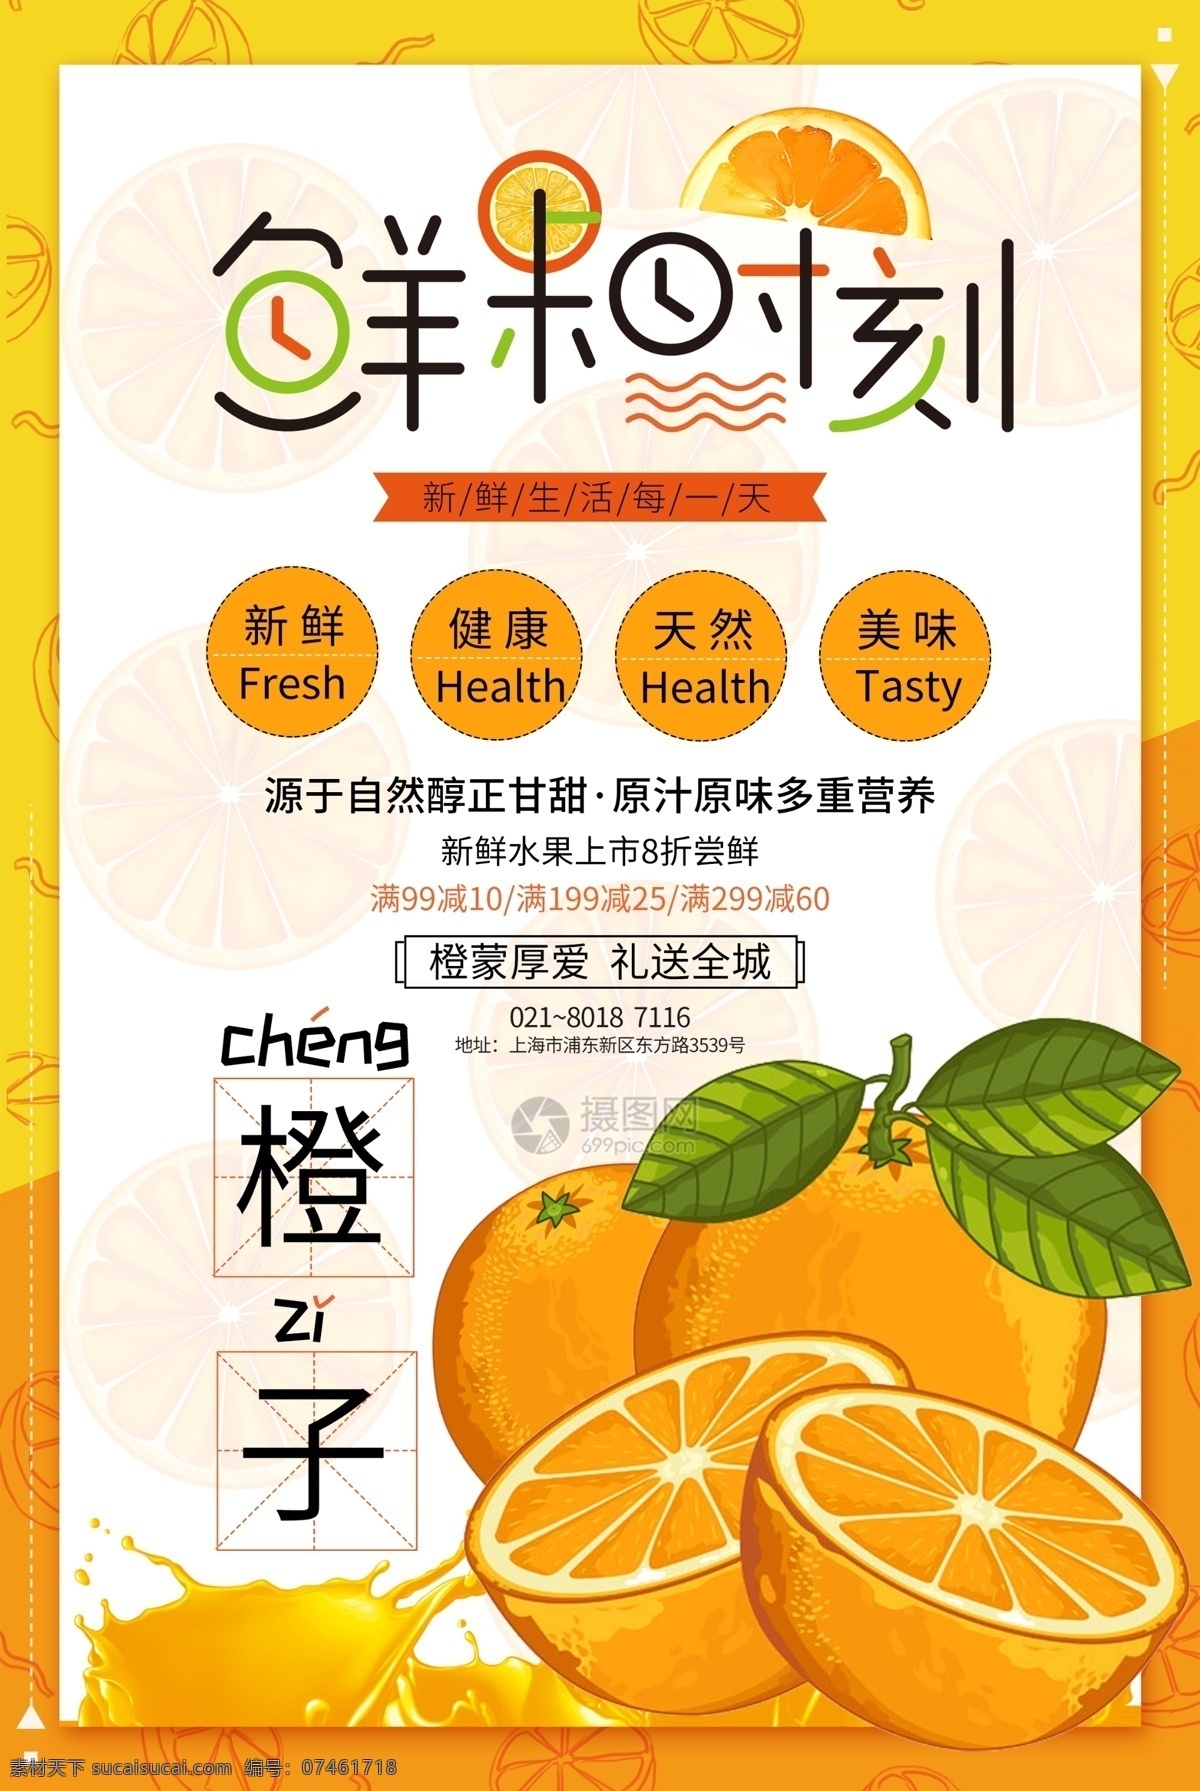 鲜果 时刻 水果 海报 鲜果时刻 水果海报 橙子 橙子海报 鲜果海报 美食 健康水果 水果促销